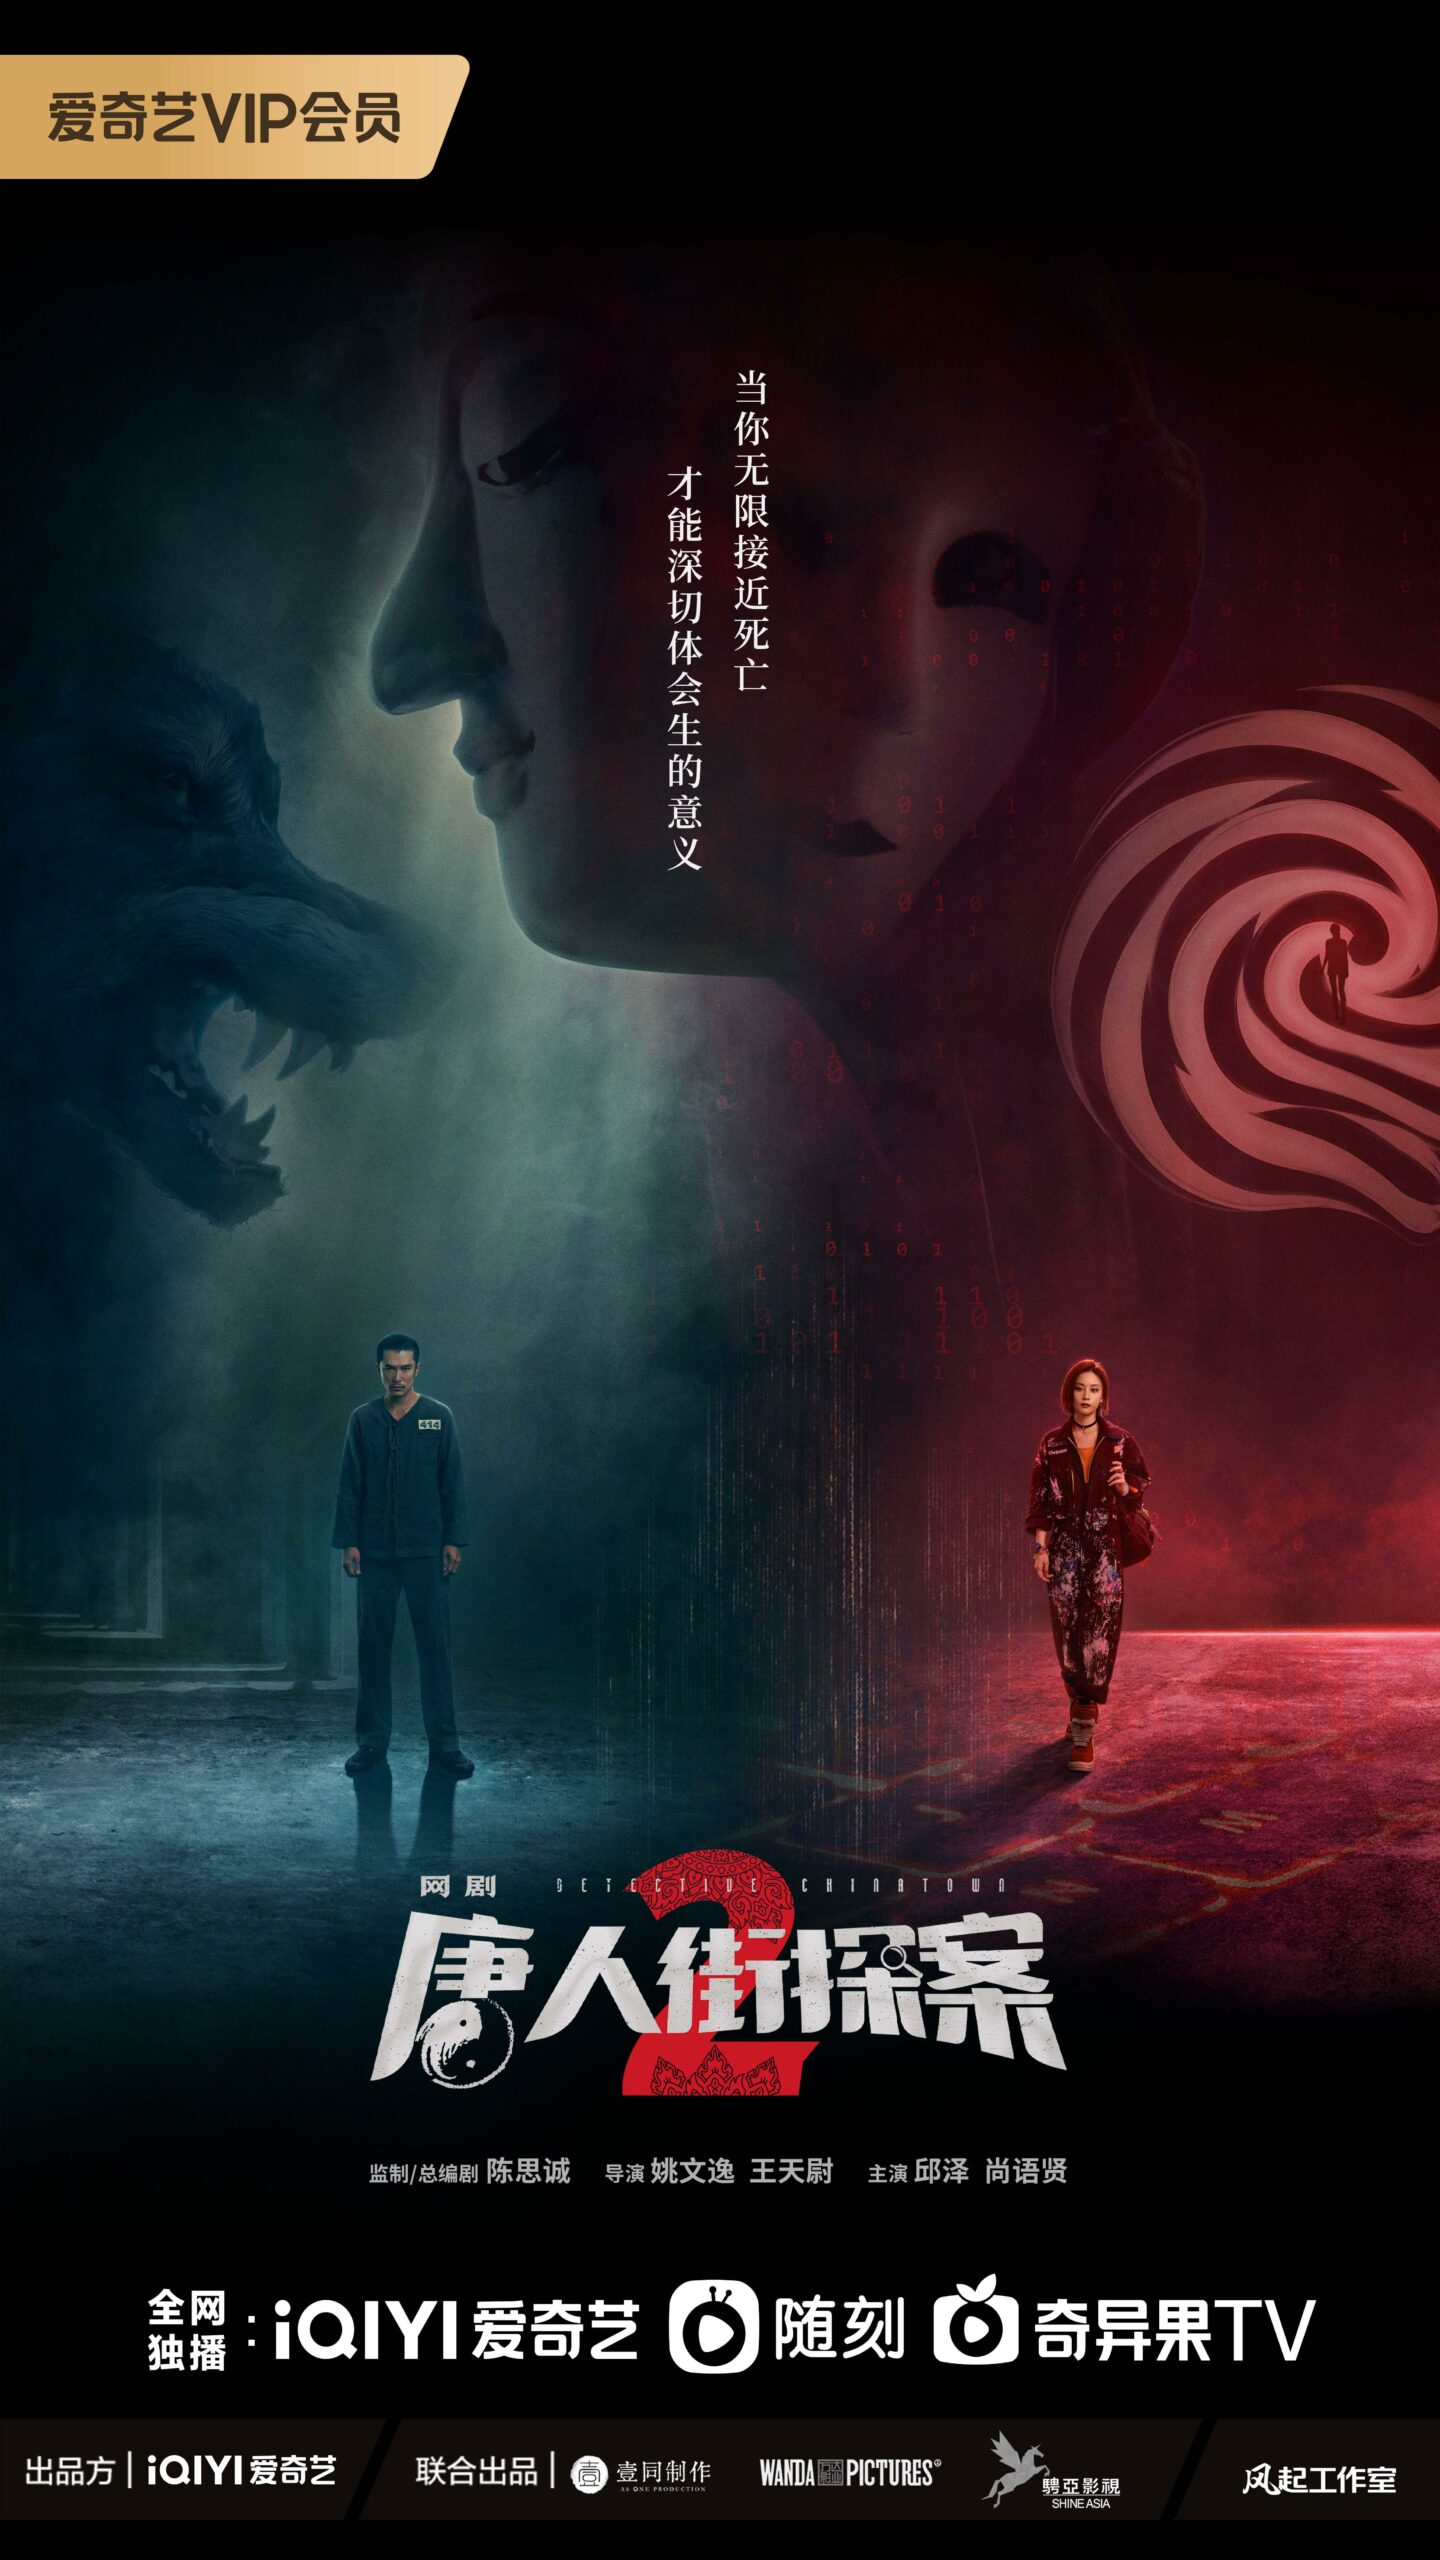 ดูหนังออนไลน์ฟรี ซีรี่ย์จีน Detective Chinatown 2 นักสืบไชน่าทาวน์ 2 ซับไทย